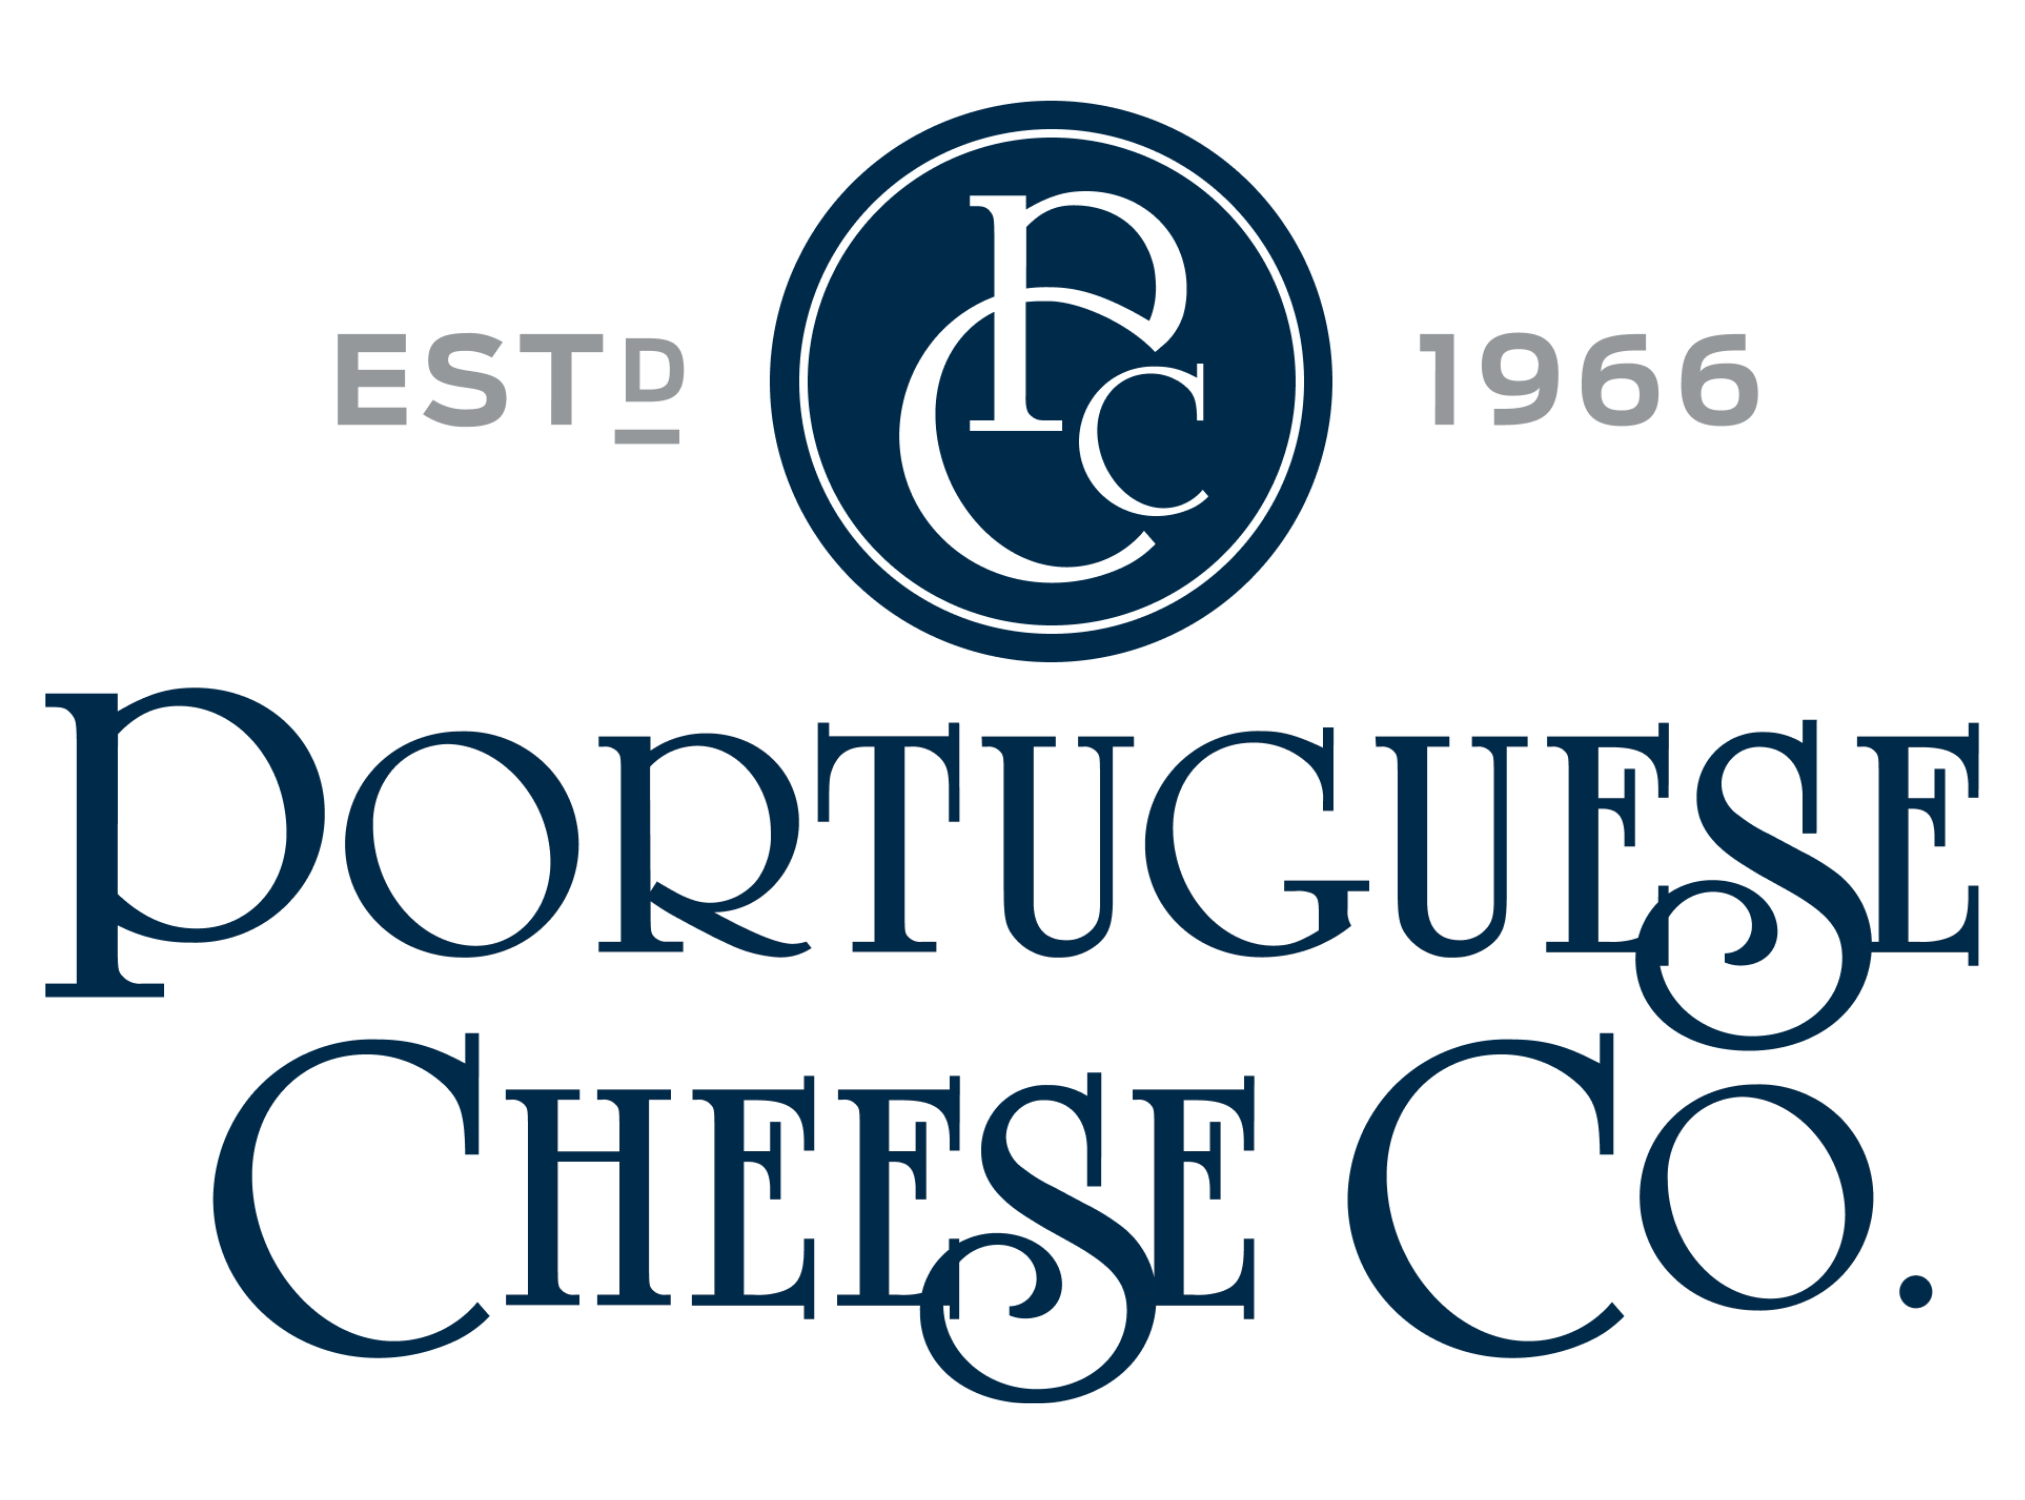 Portuguese Cheese Company